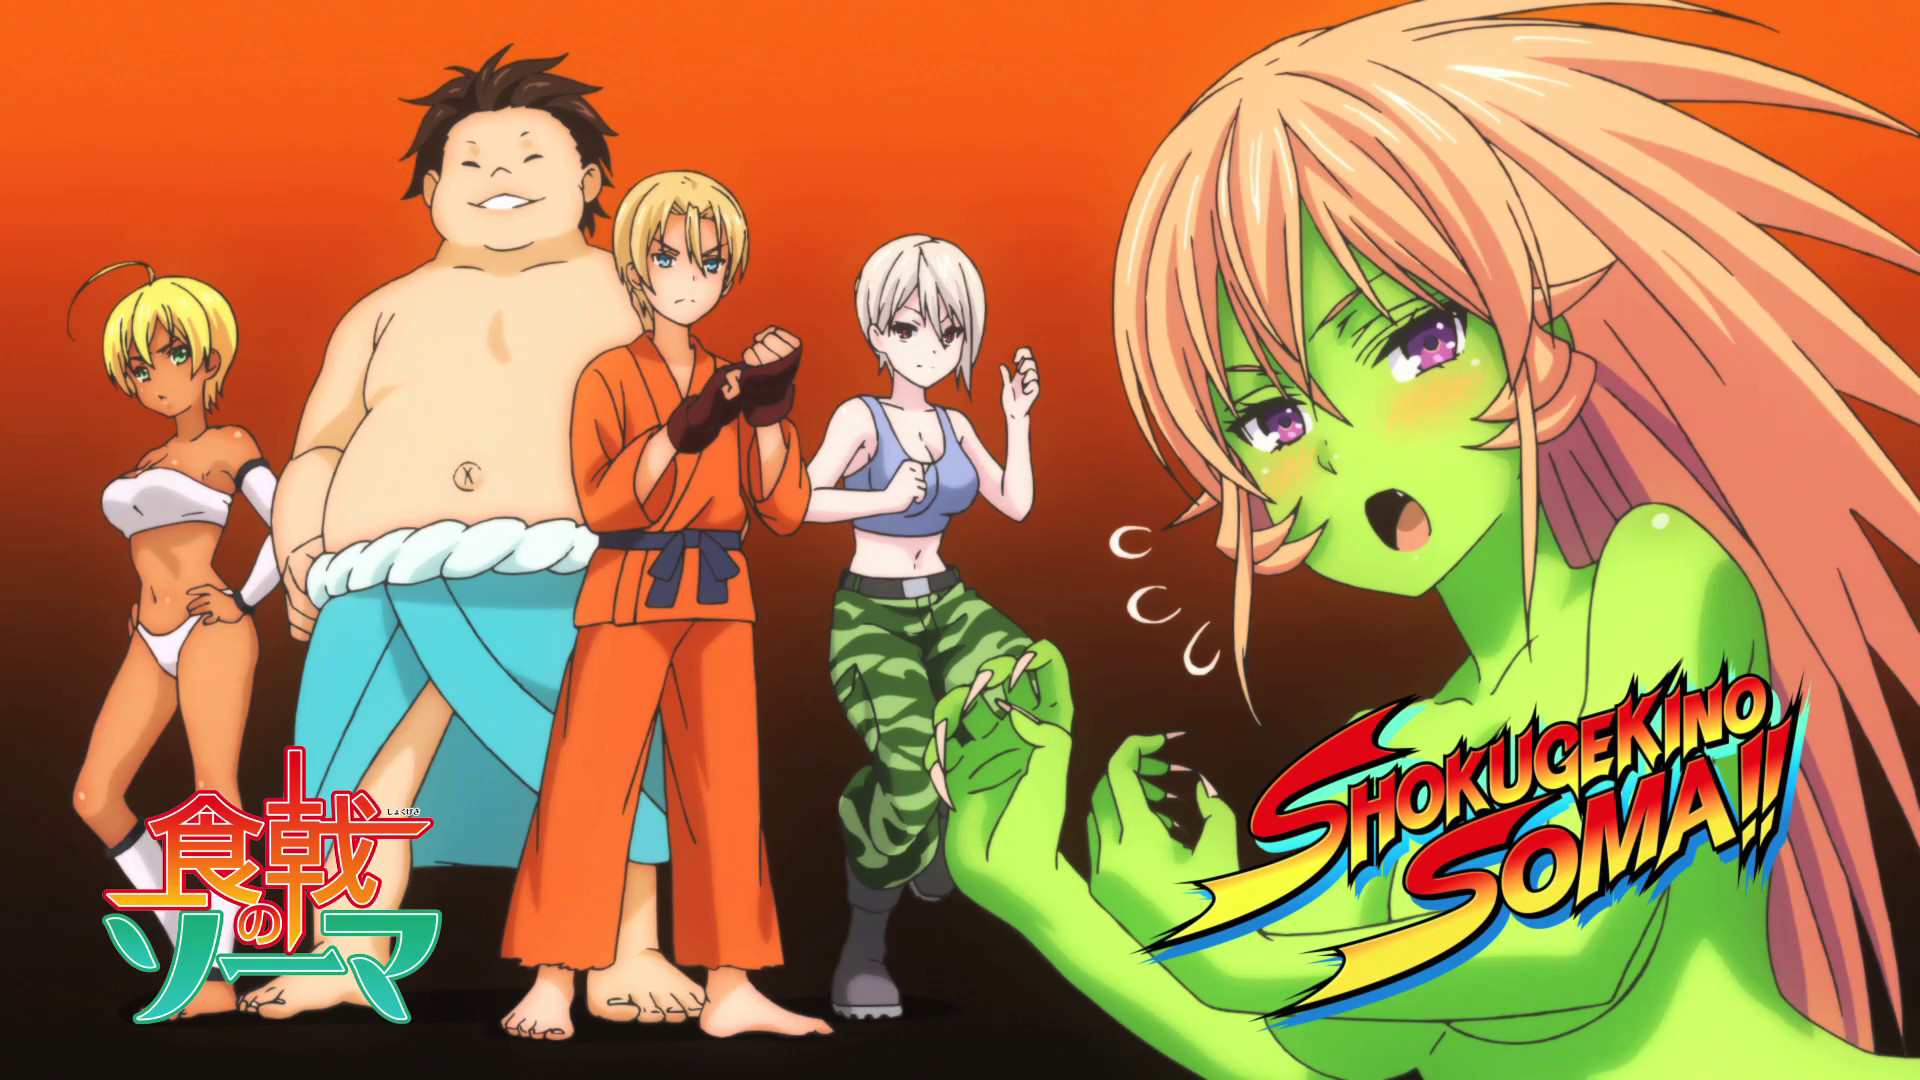 1920x1080 ... Shokugeki no Soma Fourteen Episode Thoughts Â· Food Wars Street Fighter  Parody Endcard